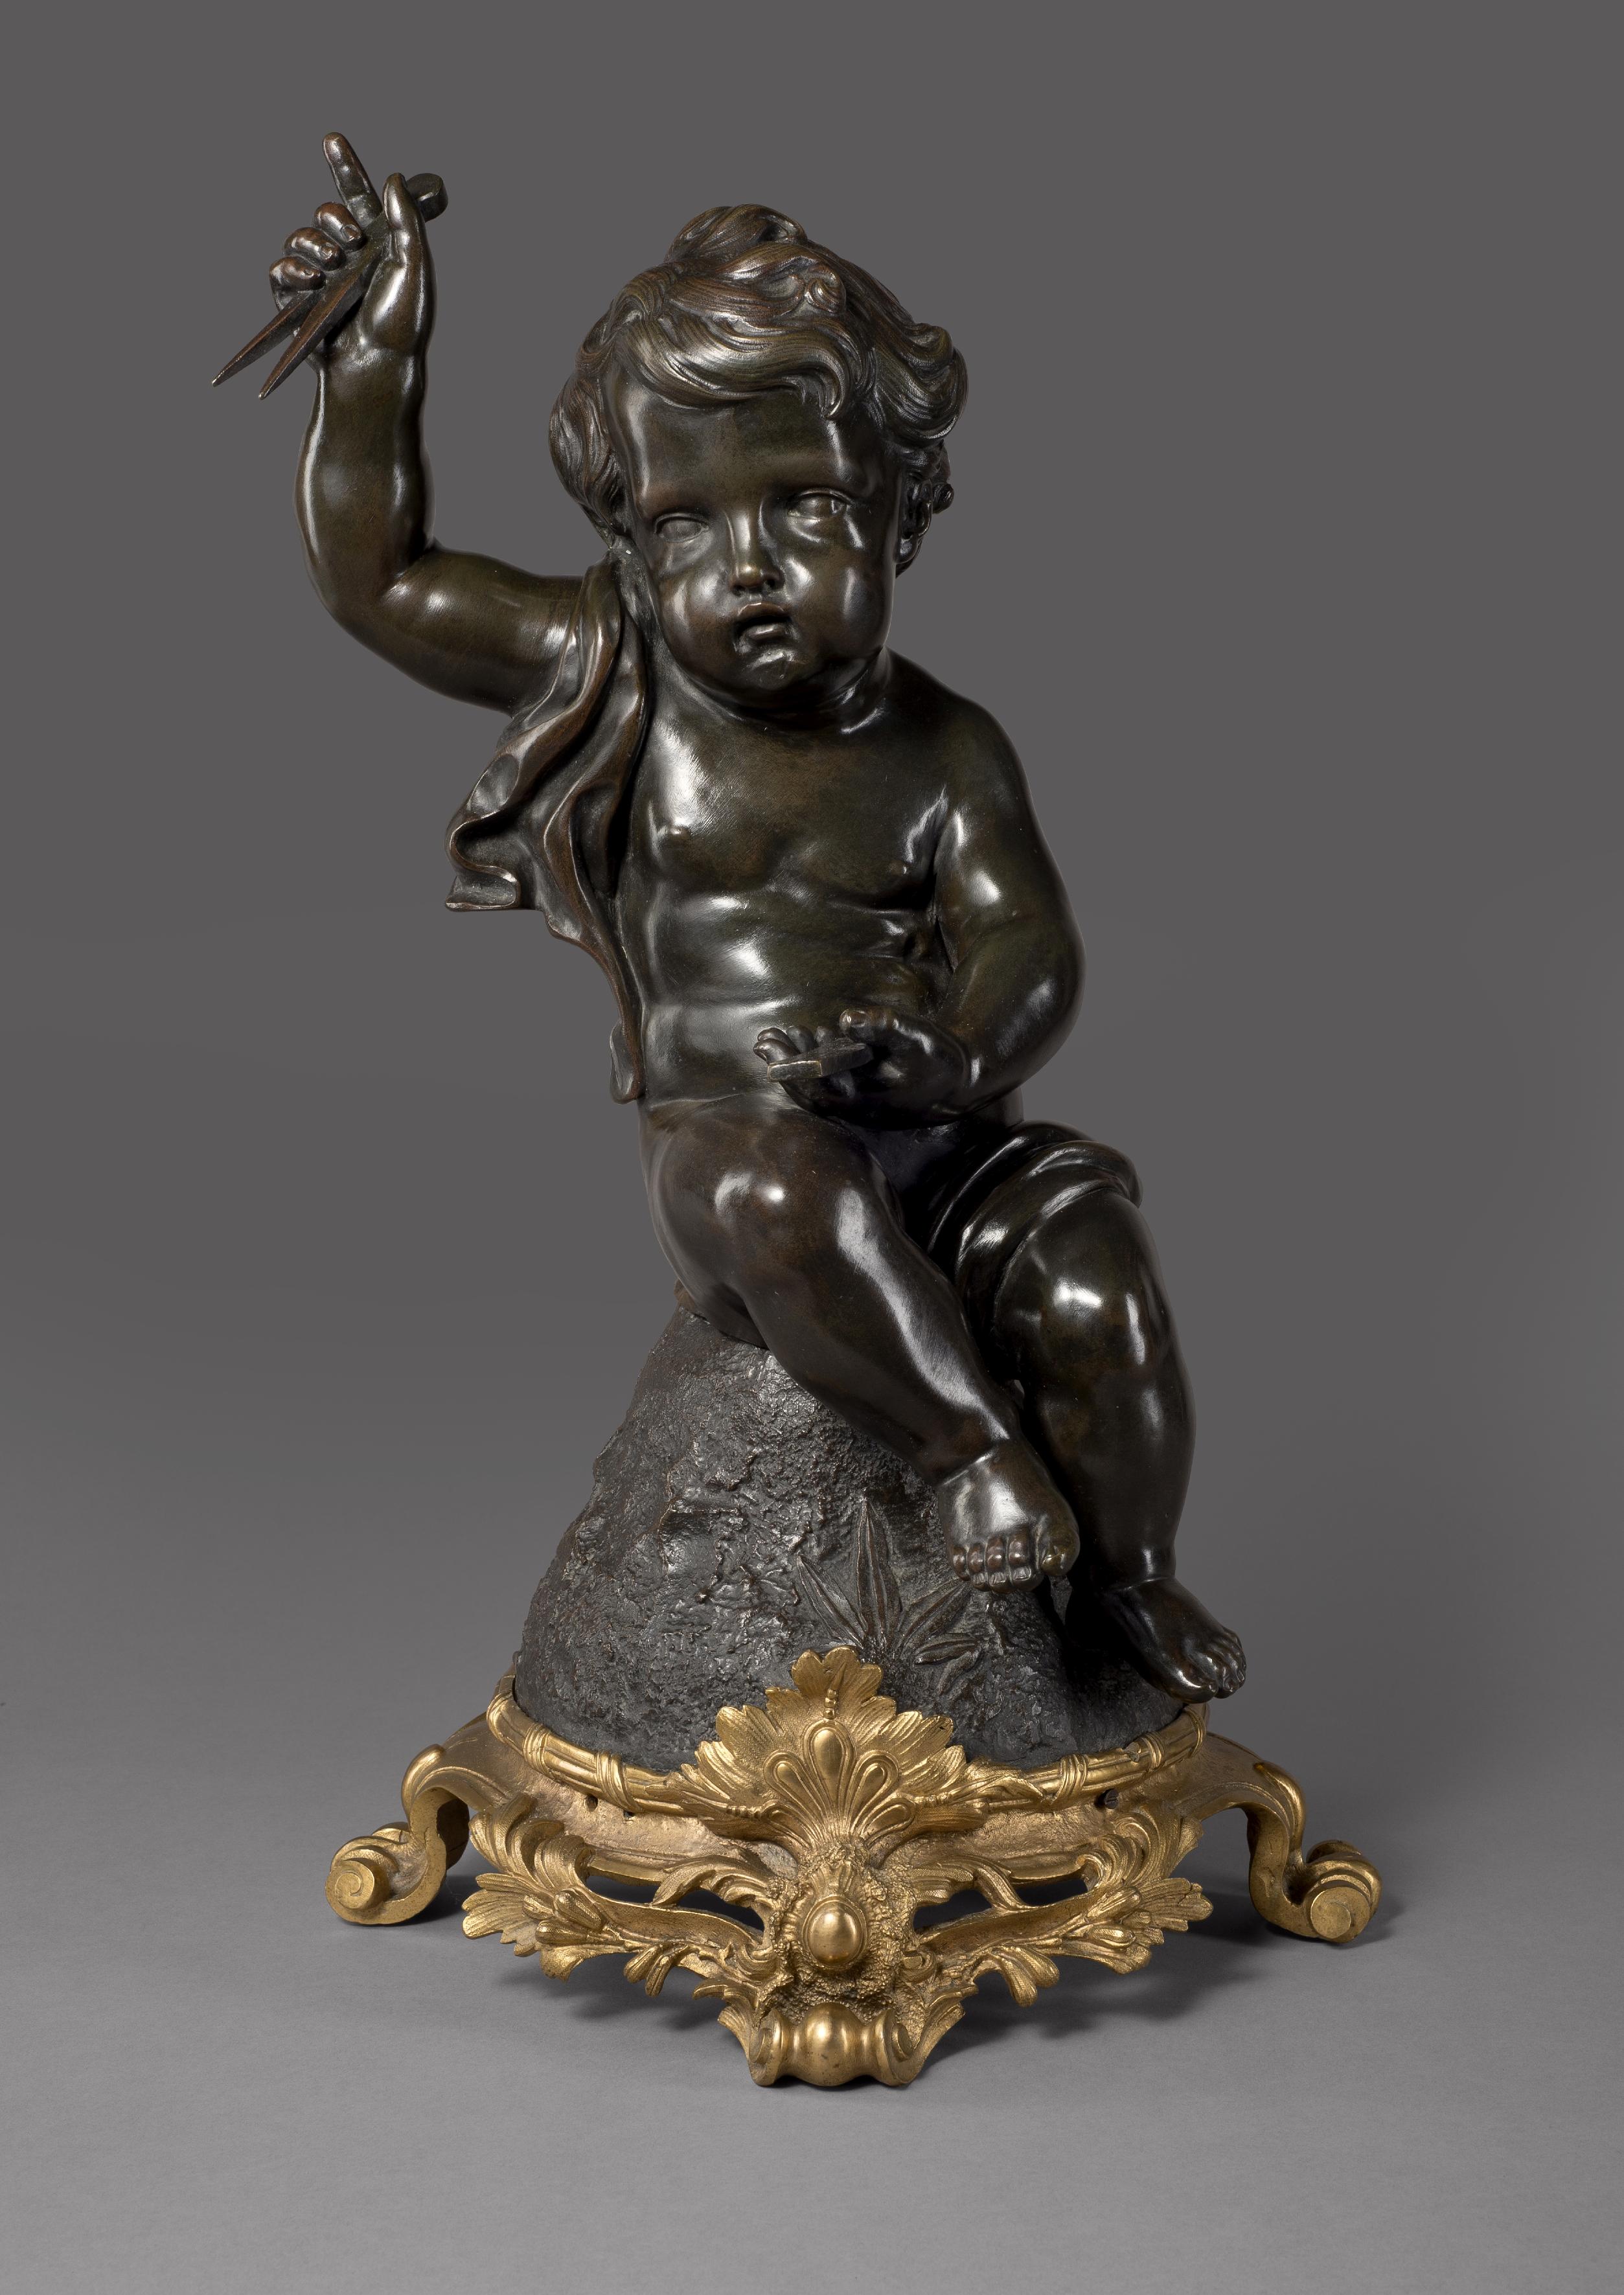 Eine schöne Putto-Figur aus patinierter Bronze, ein Symbol der Architektur, nach Claude Michel Clodion.

Frankreich, um 1890. 

Die 55 cm hohe, fein modellierte Putto-Figur sitzt auf einem naturalistischen Felsen und hält in der einen Hand einen